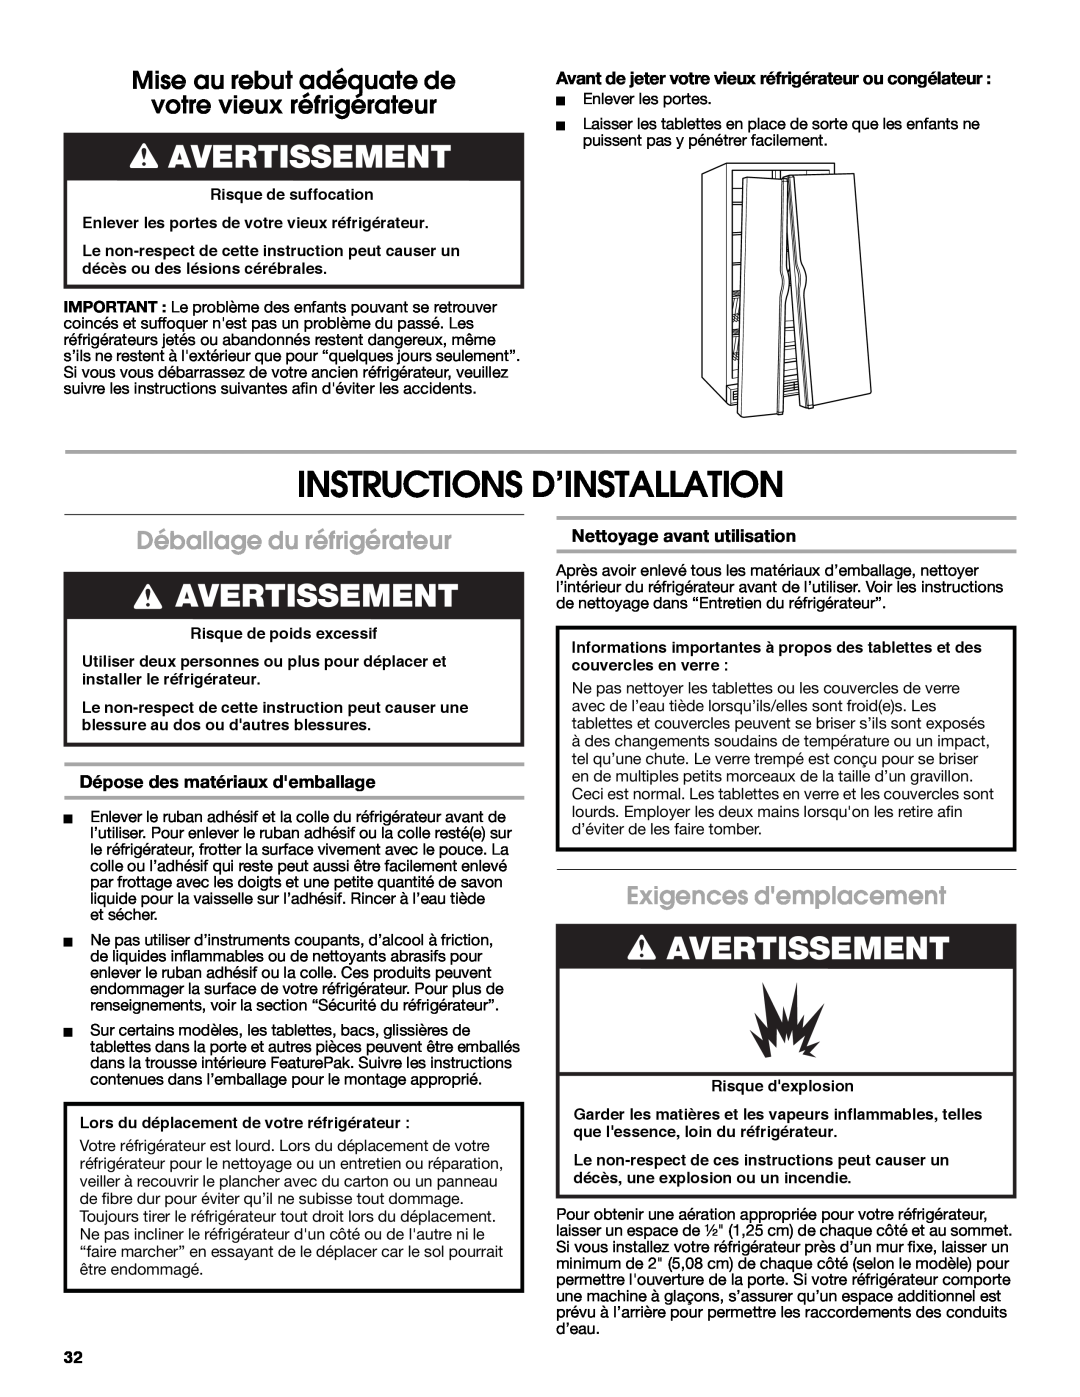 Whirlpool W10266784A manual Instructions D’Installation, Avertissement, Mise au rebut adéquate de votre vieux réfrigérateur 